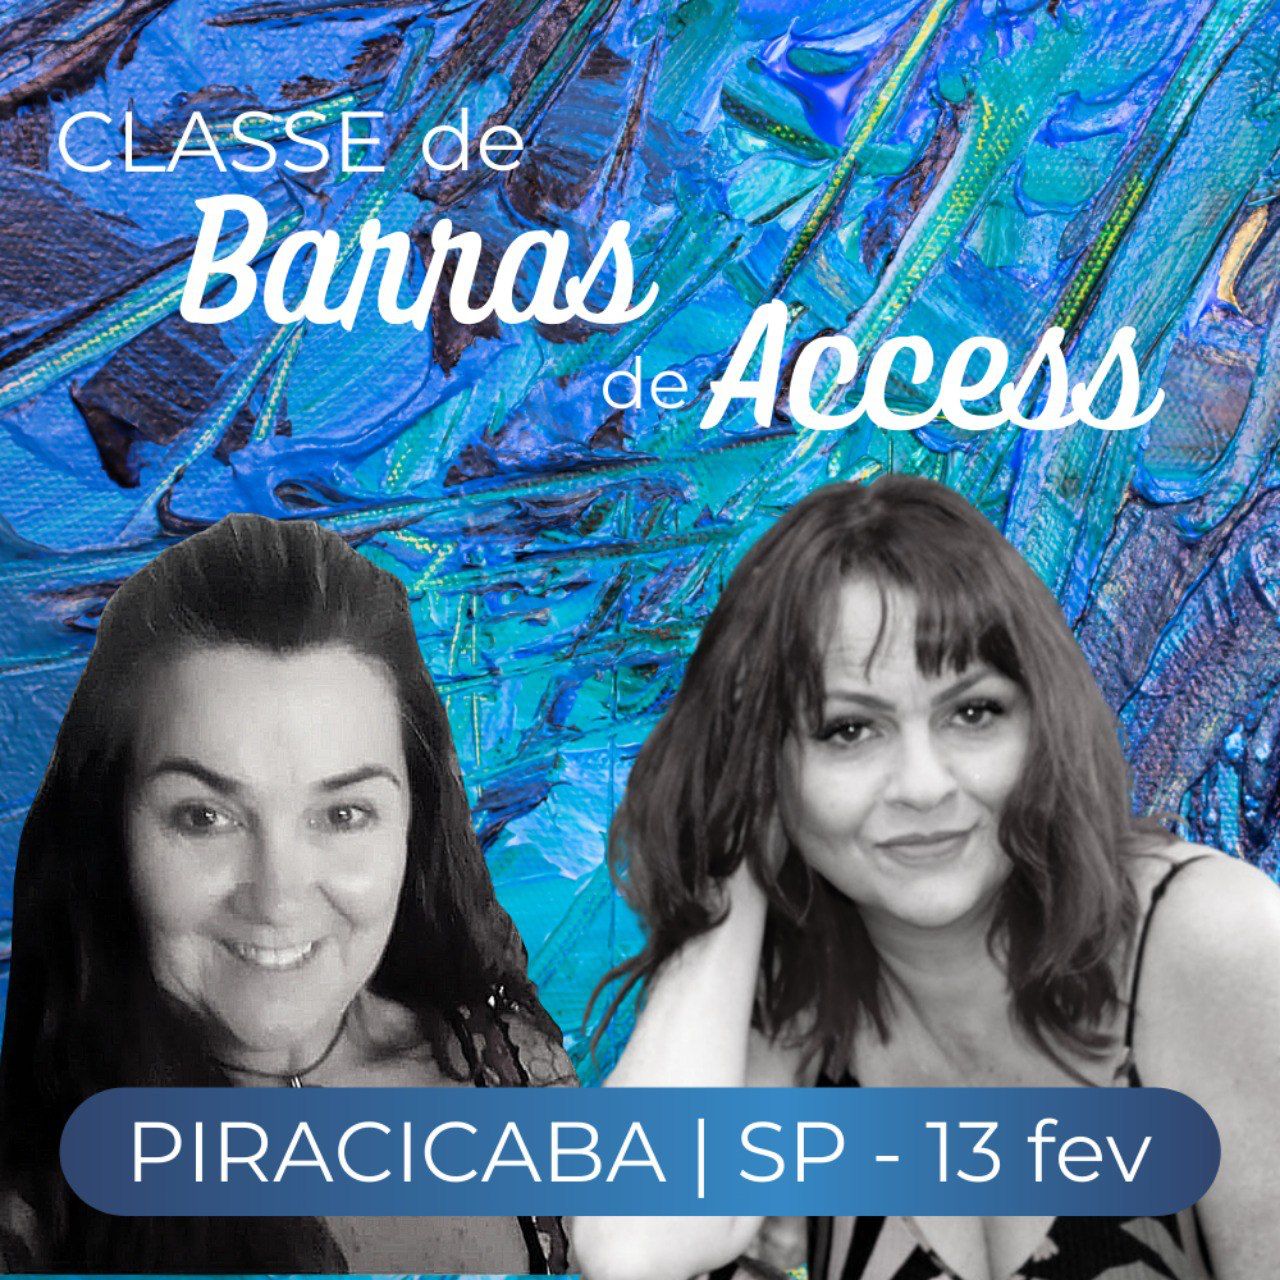 CURSO DE BARRAS DE ACCESS 13/02/2022 EM PIRACICABA/SP